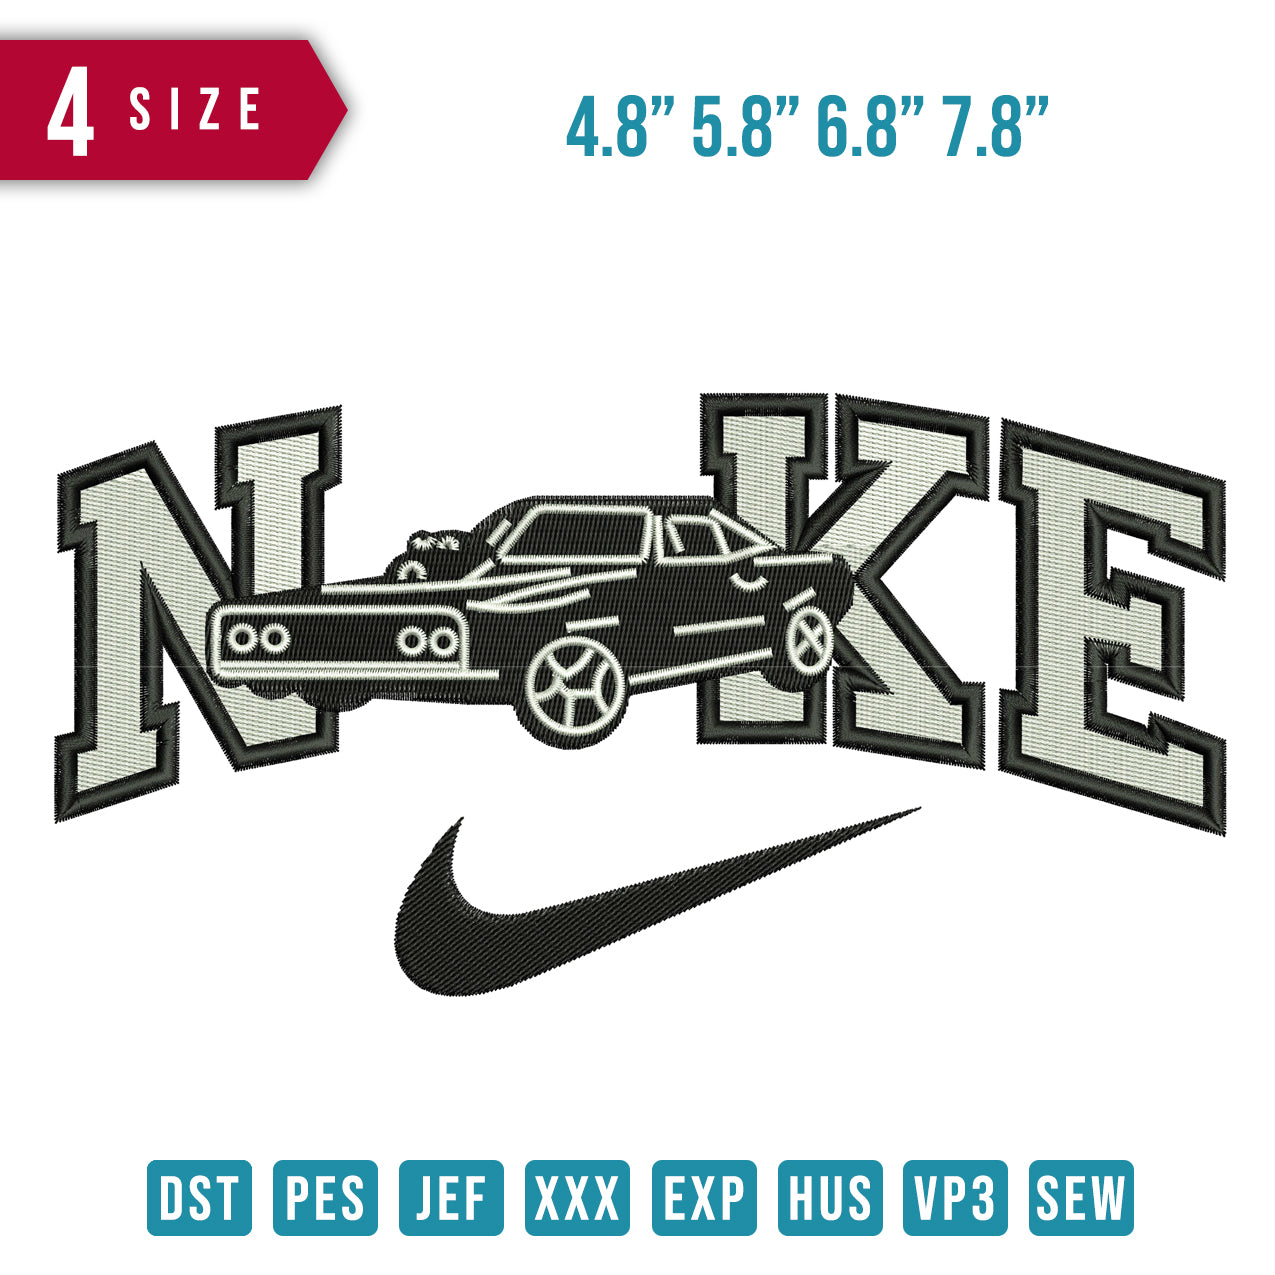 Nike Car Muscle